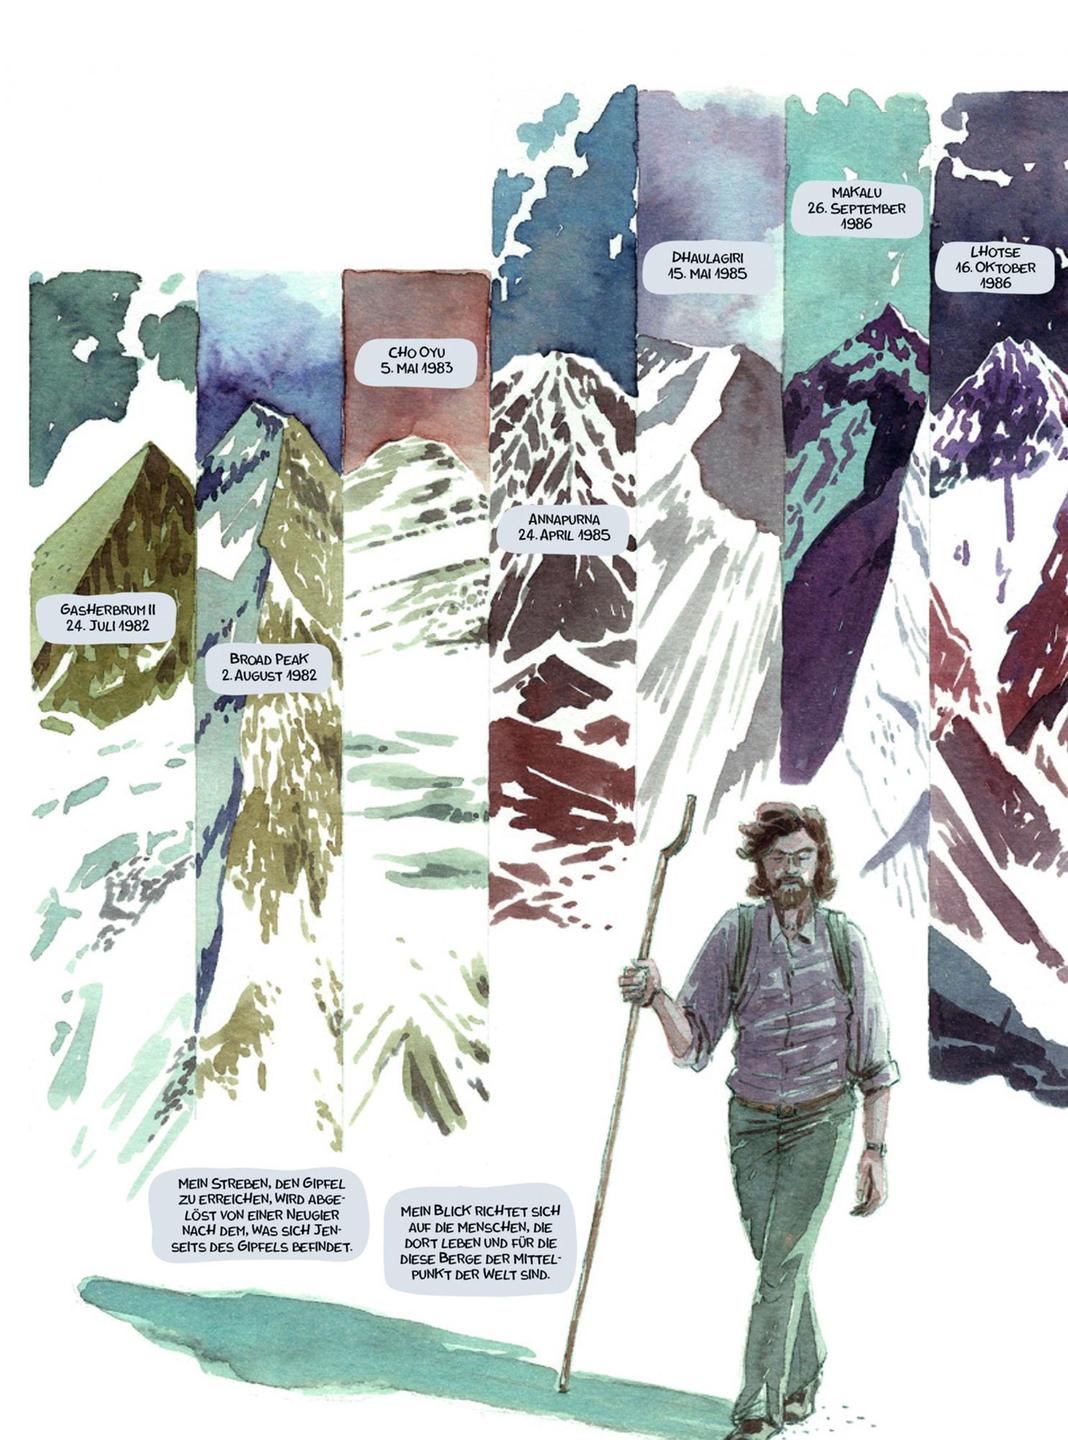 Ausschnitt aus dem Buch "Das Leben eines Extrembergsteigers" von Michele Petrucci und Reinhold Messner